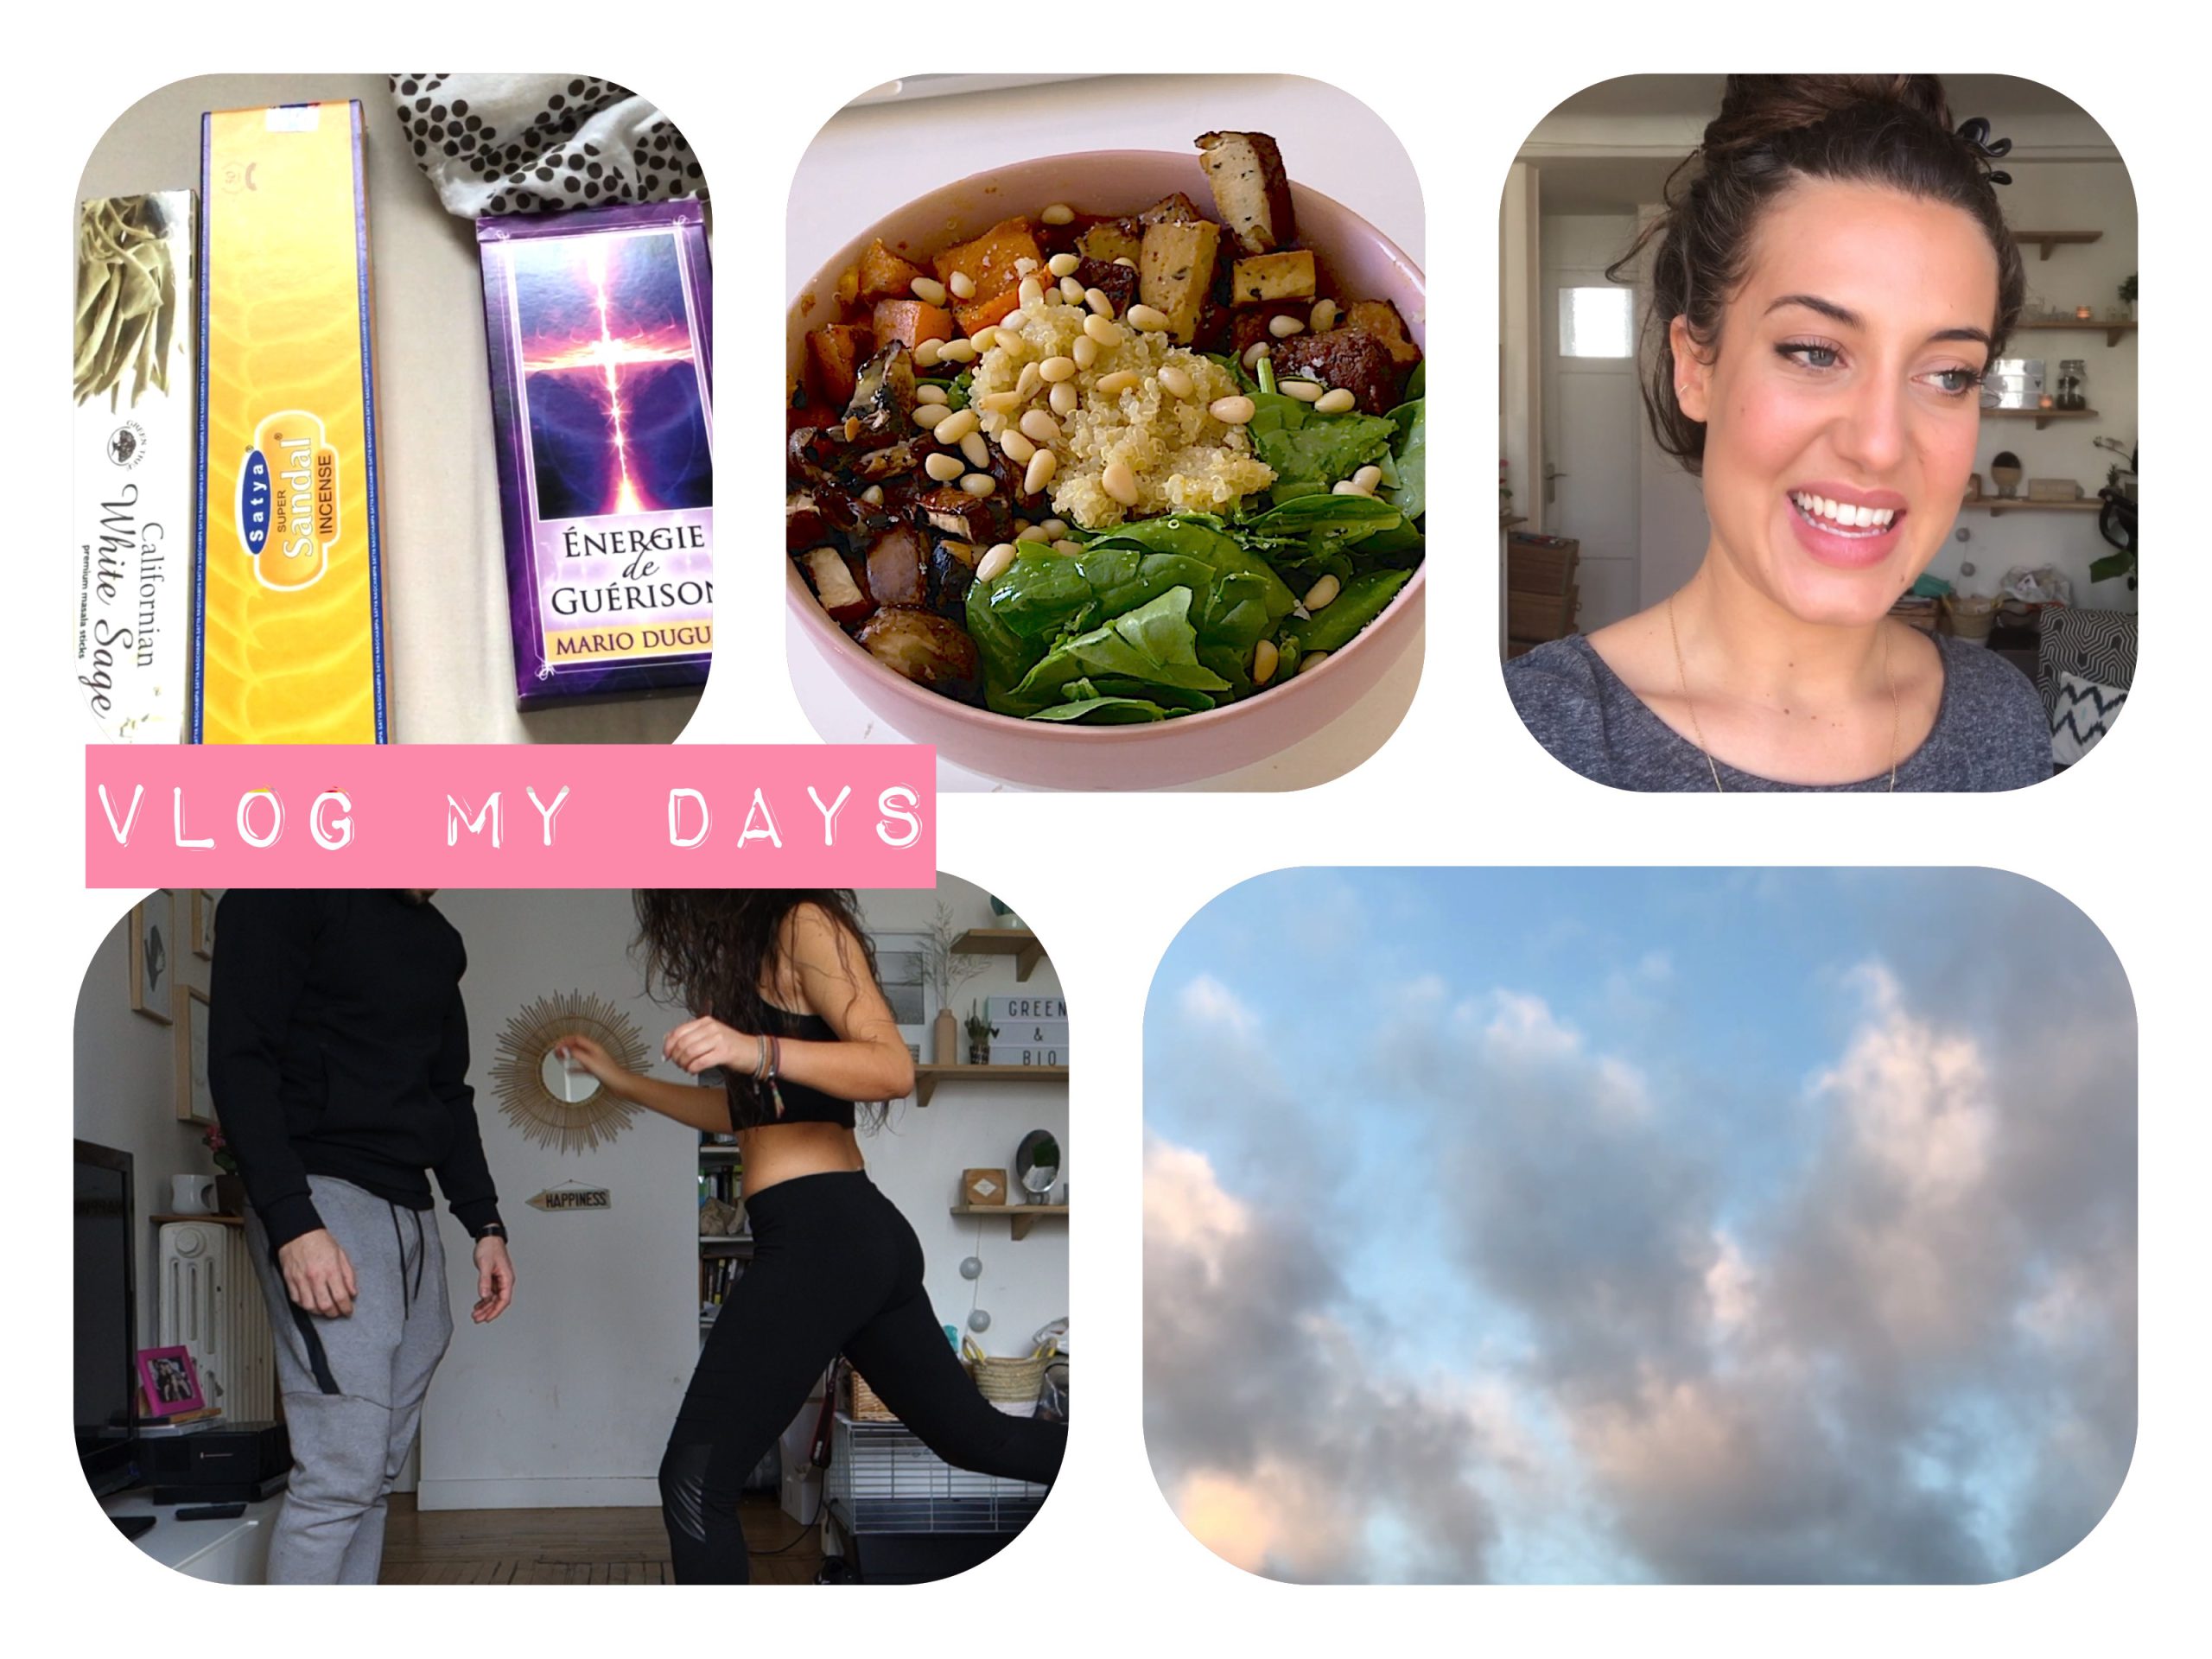 Lire la suite à propos de l’article Vlog my days : beauté, sport, alimentation, spiritualité, et polémiques